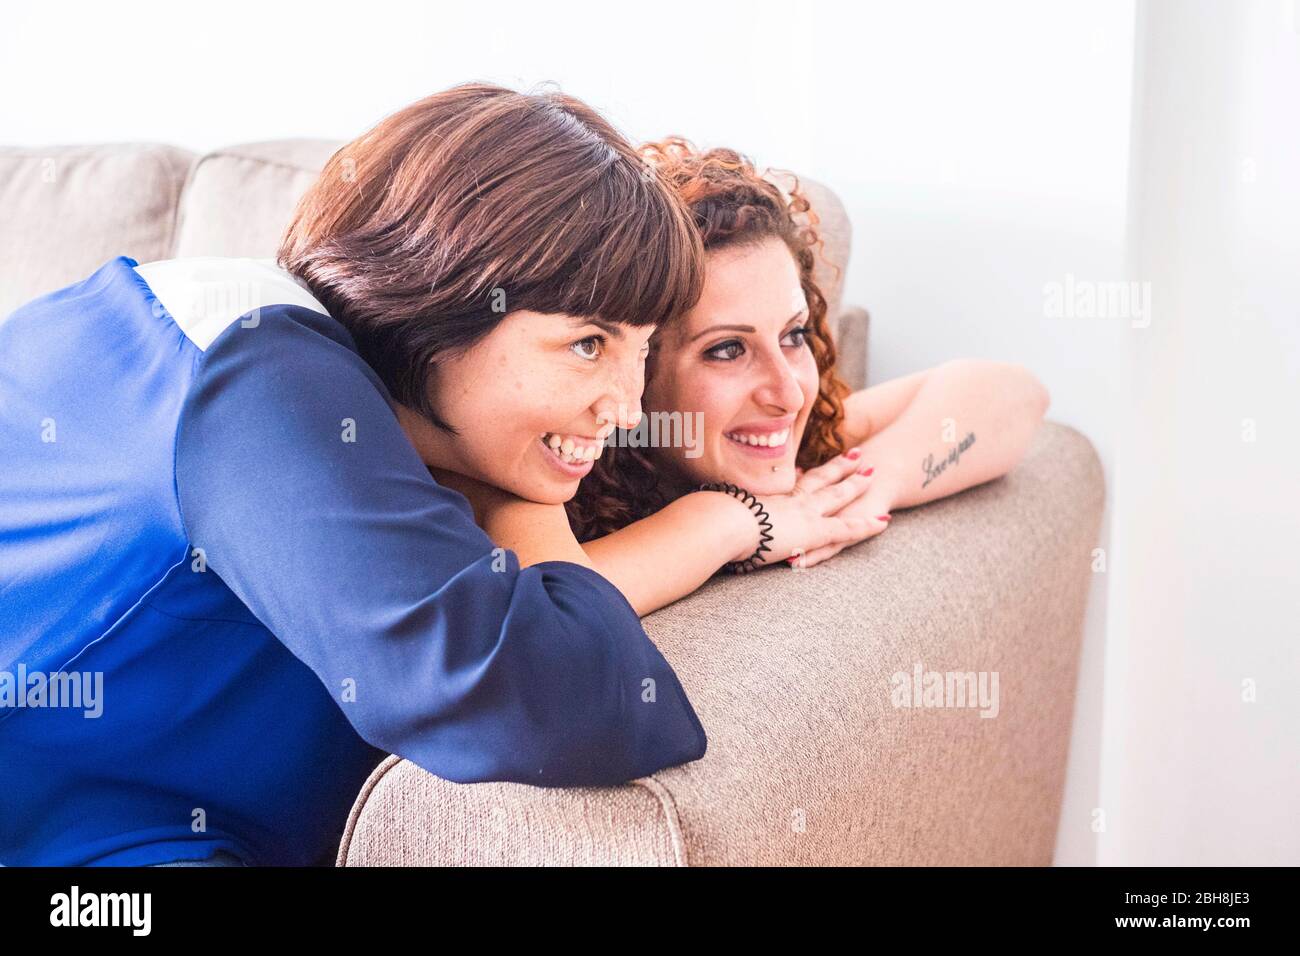 Paar odd zwei Freundinnen bleiben nah zusammen auf dem Sofa lächelnd und Spaß haben. Freundschaft oder Beziehung zu Hause drinnen mit schönen Lifestyle-Art und Weise zu leben Konzept Stockfoto